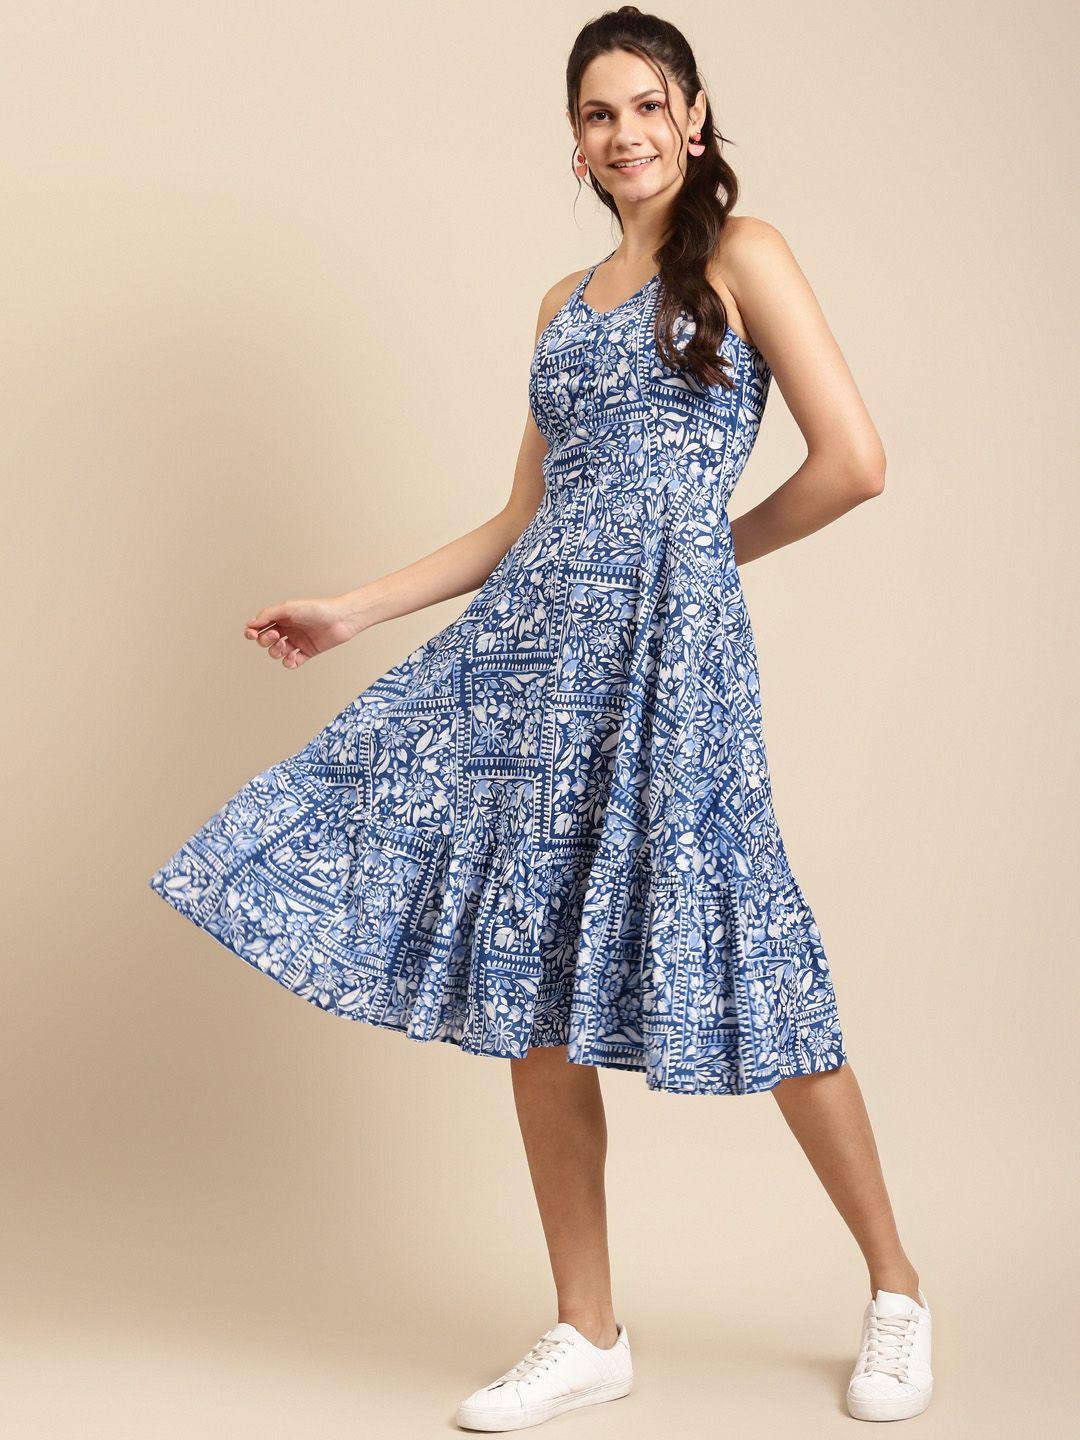 mabish by sonal jain women blue & white cotton ethnic motif print midi a-line dress